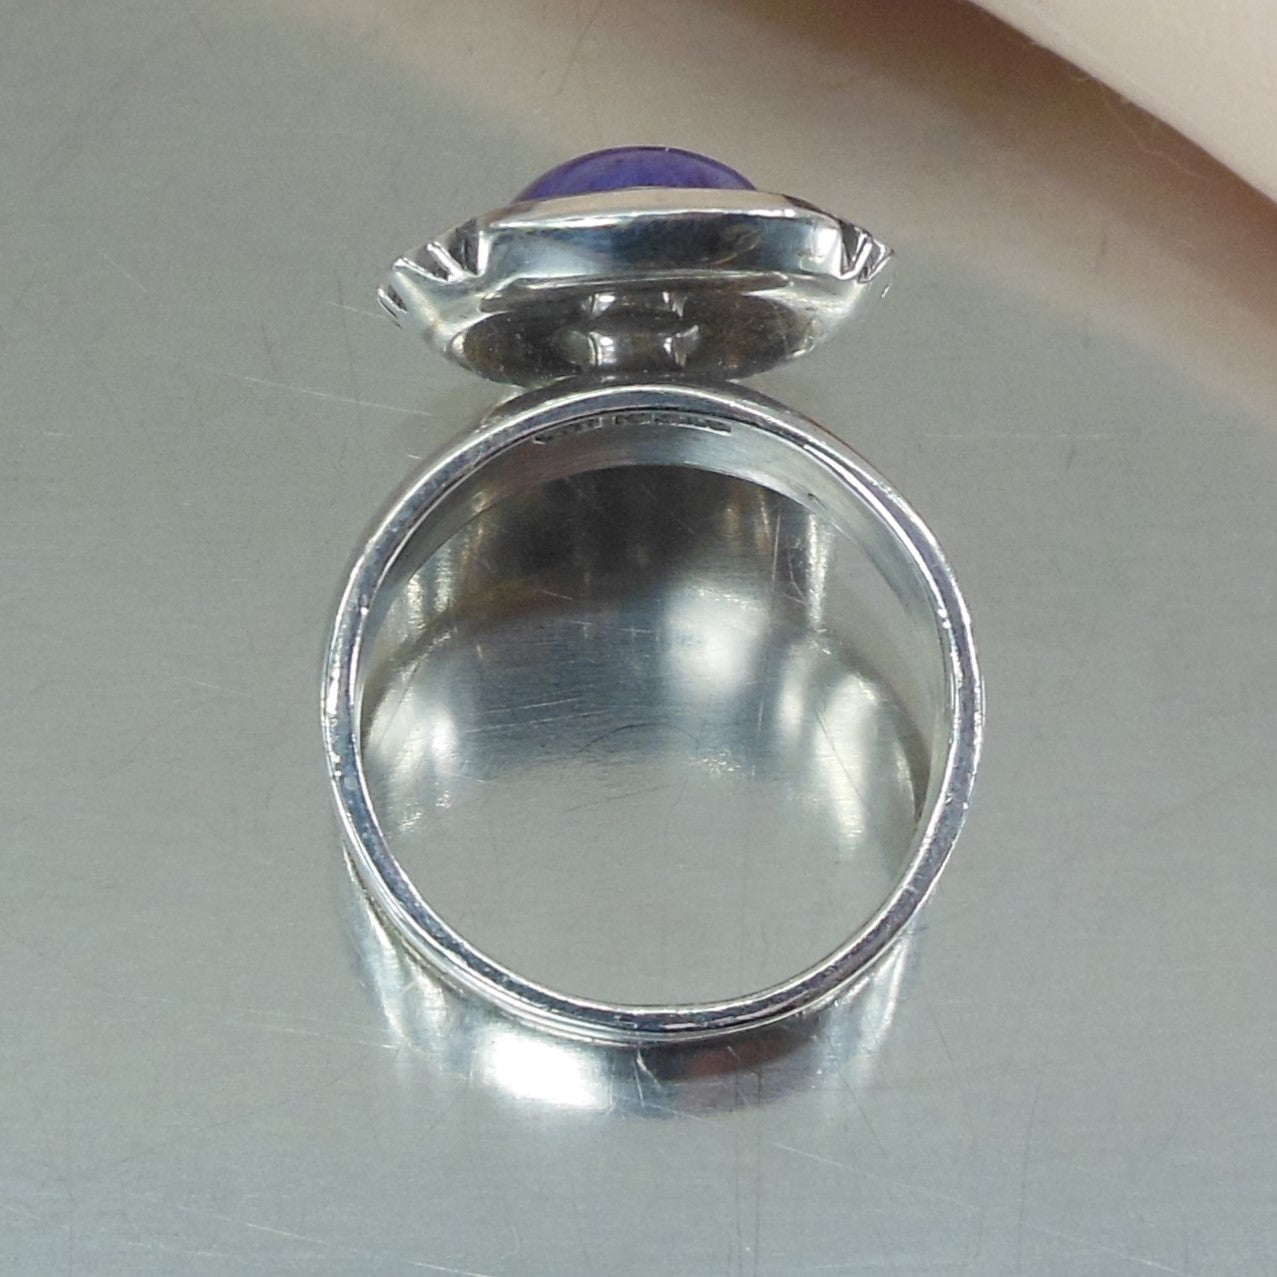 Navajo P A Priscilla Smith Sterling Silver Charoite Cabochon Ring Size 8.25 estate